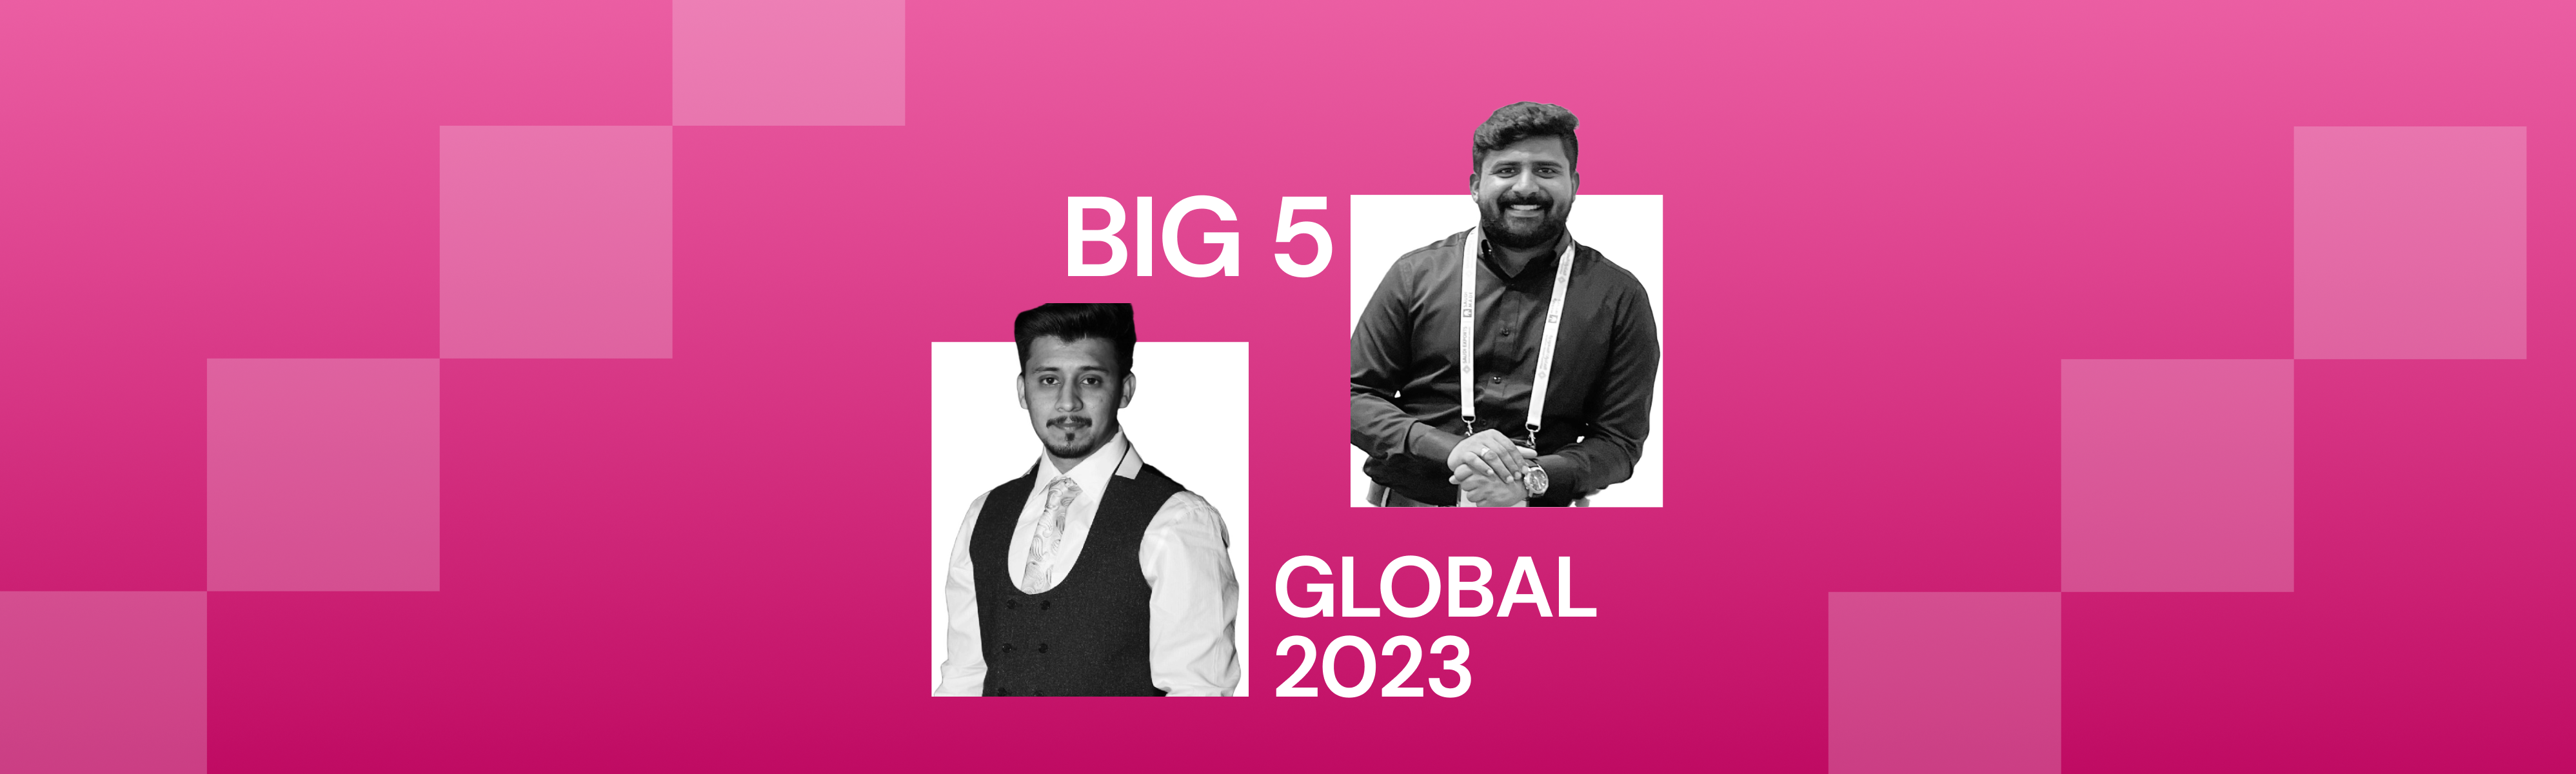 First Bit at Big 5 Global 2023: Final Highlights